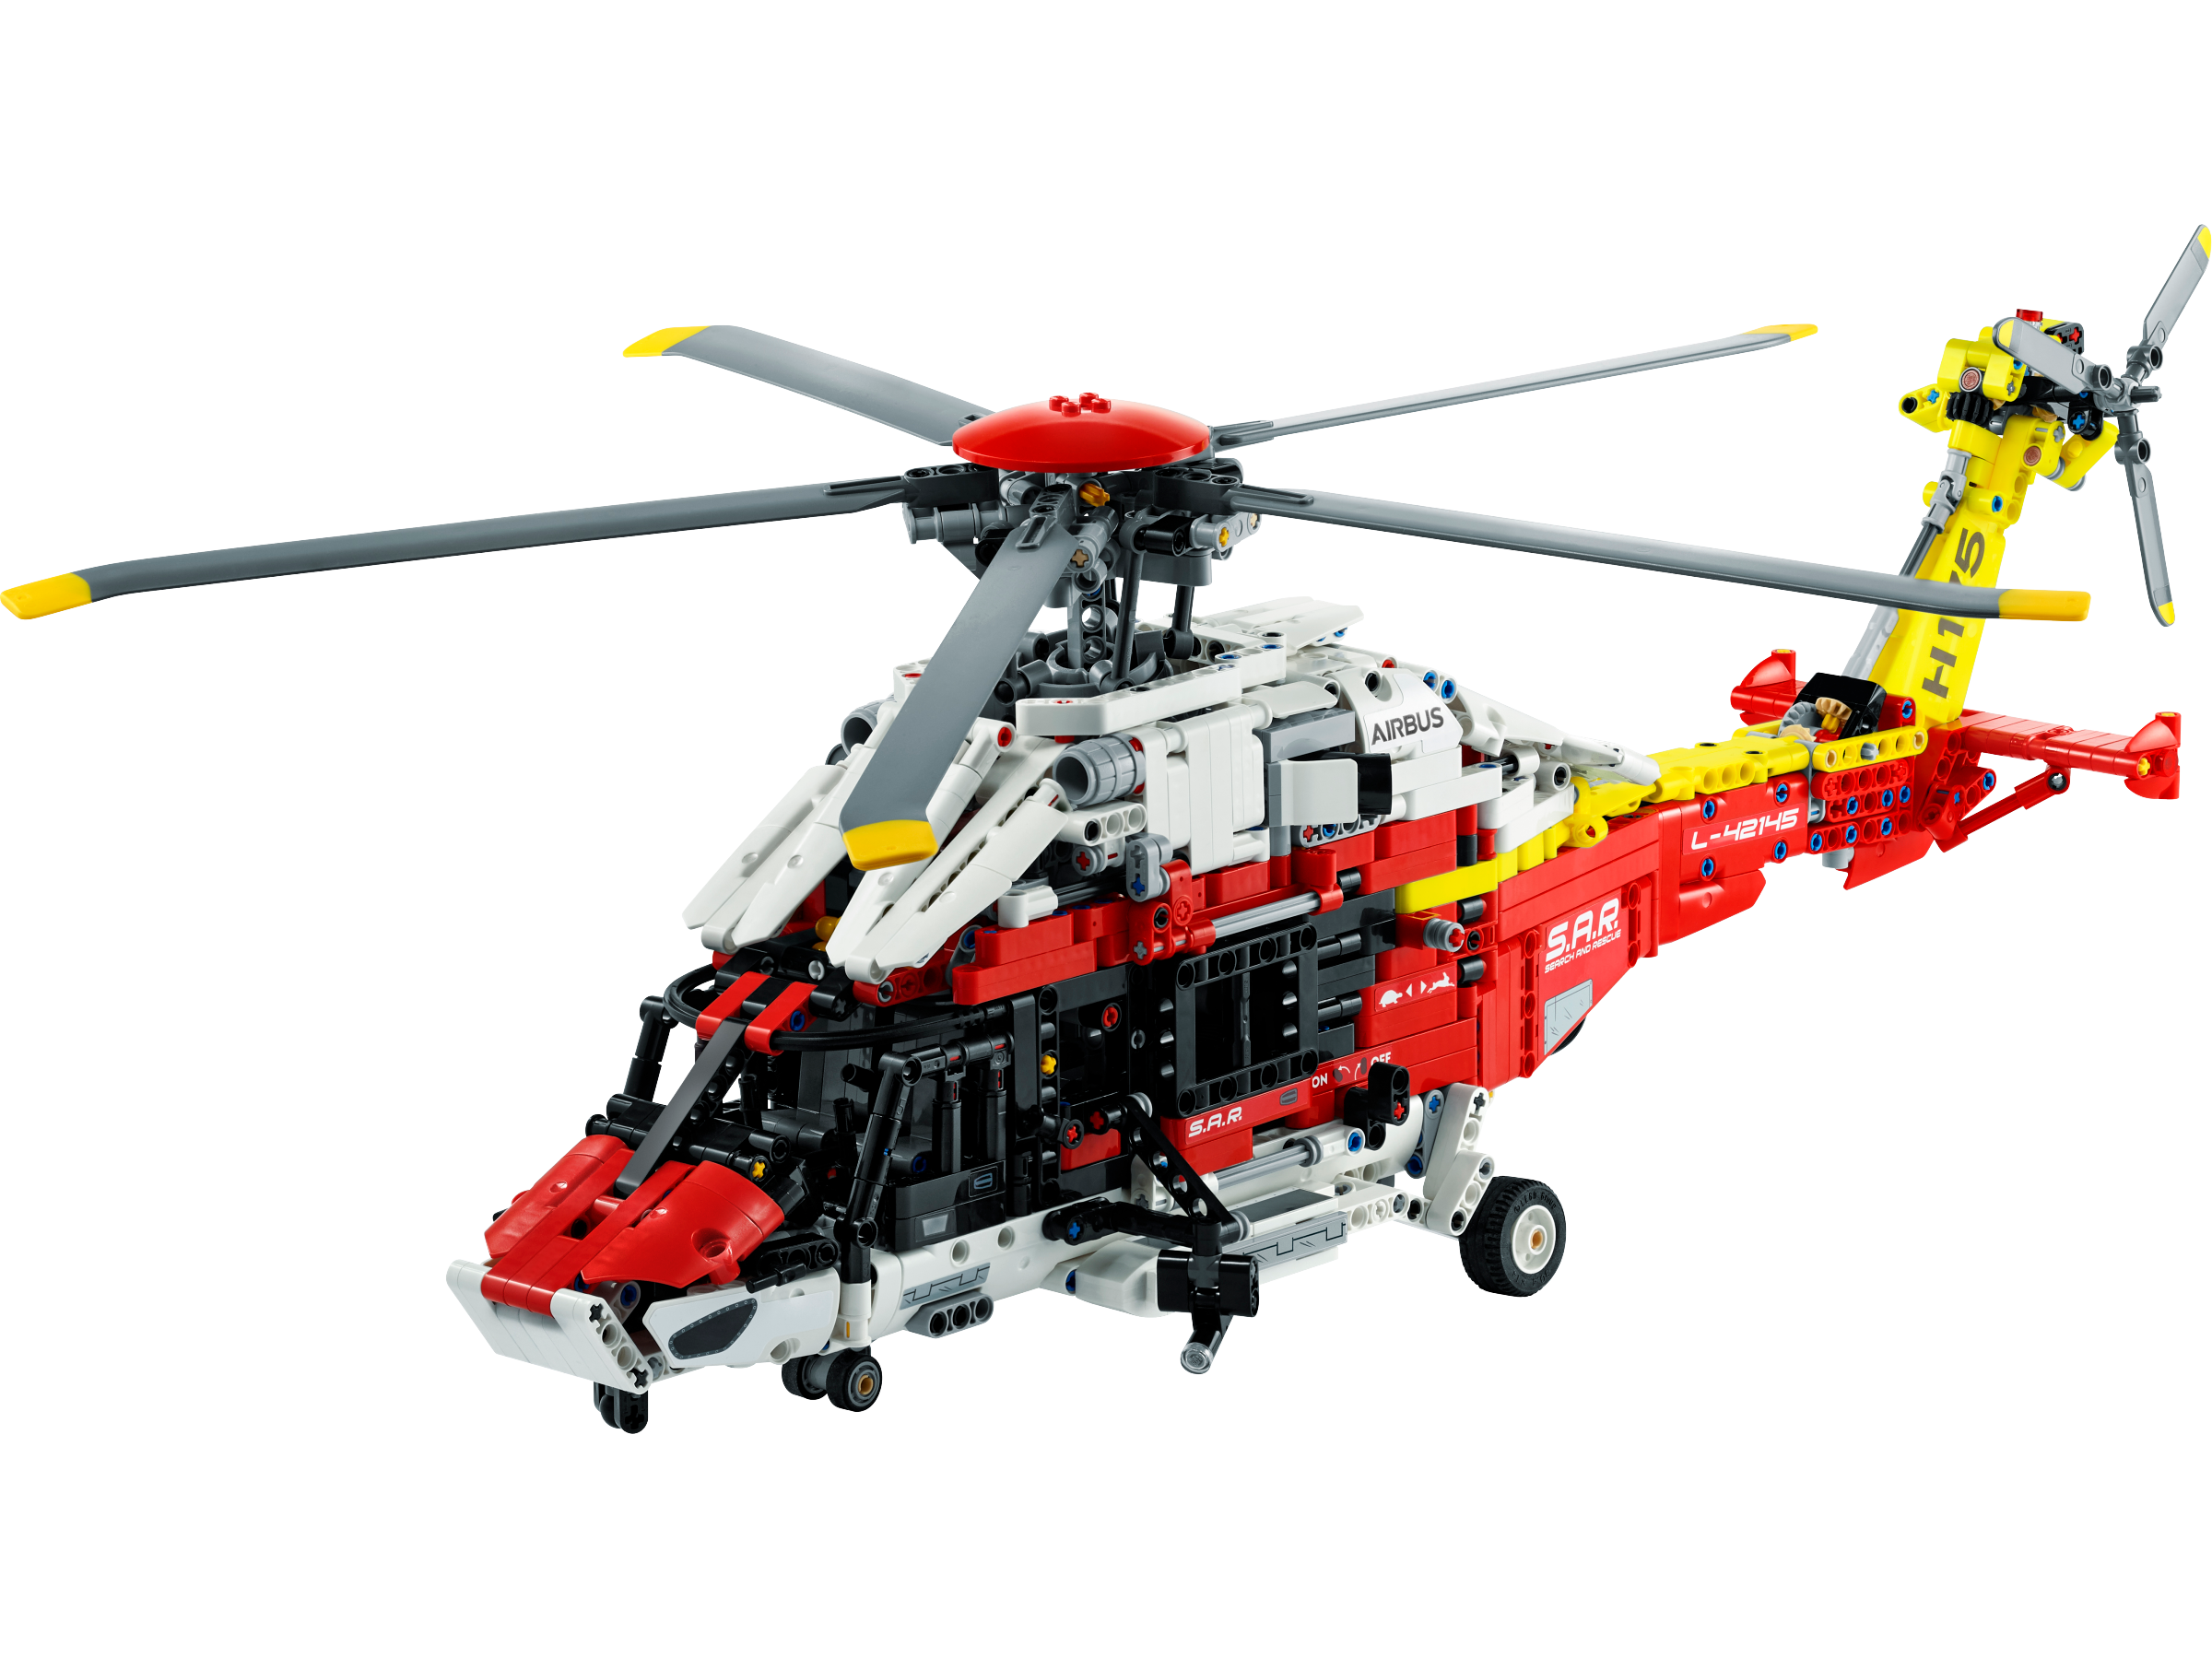 エアバス H175 レスキューヘリコプター 42145 | テクニック |レゴ ...